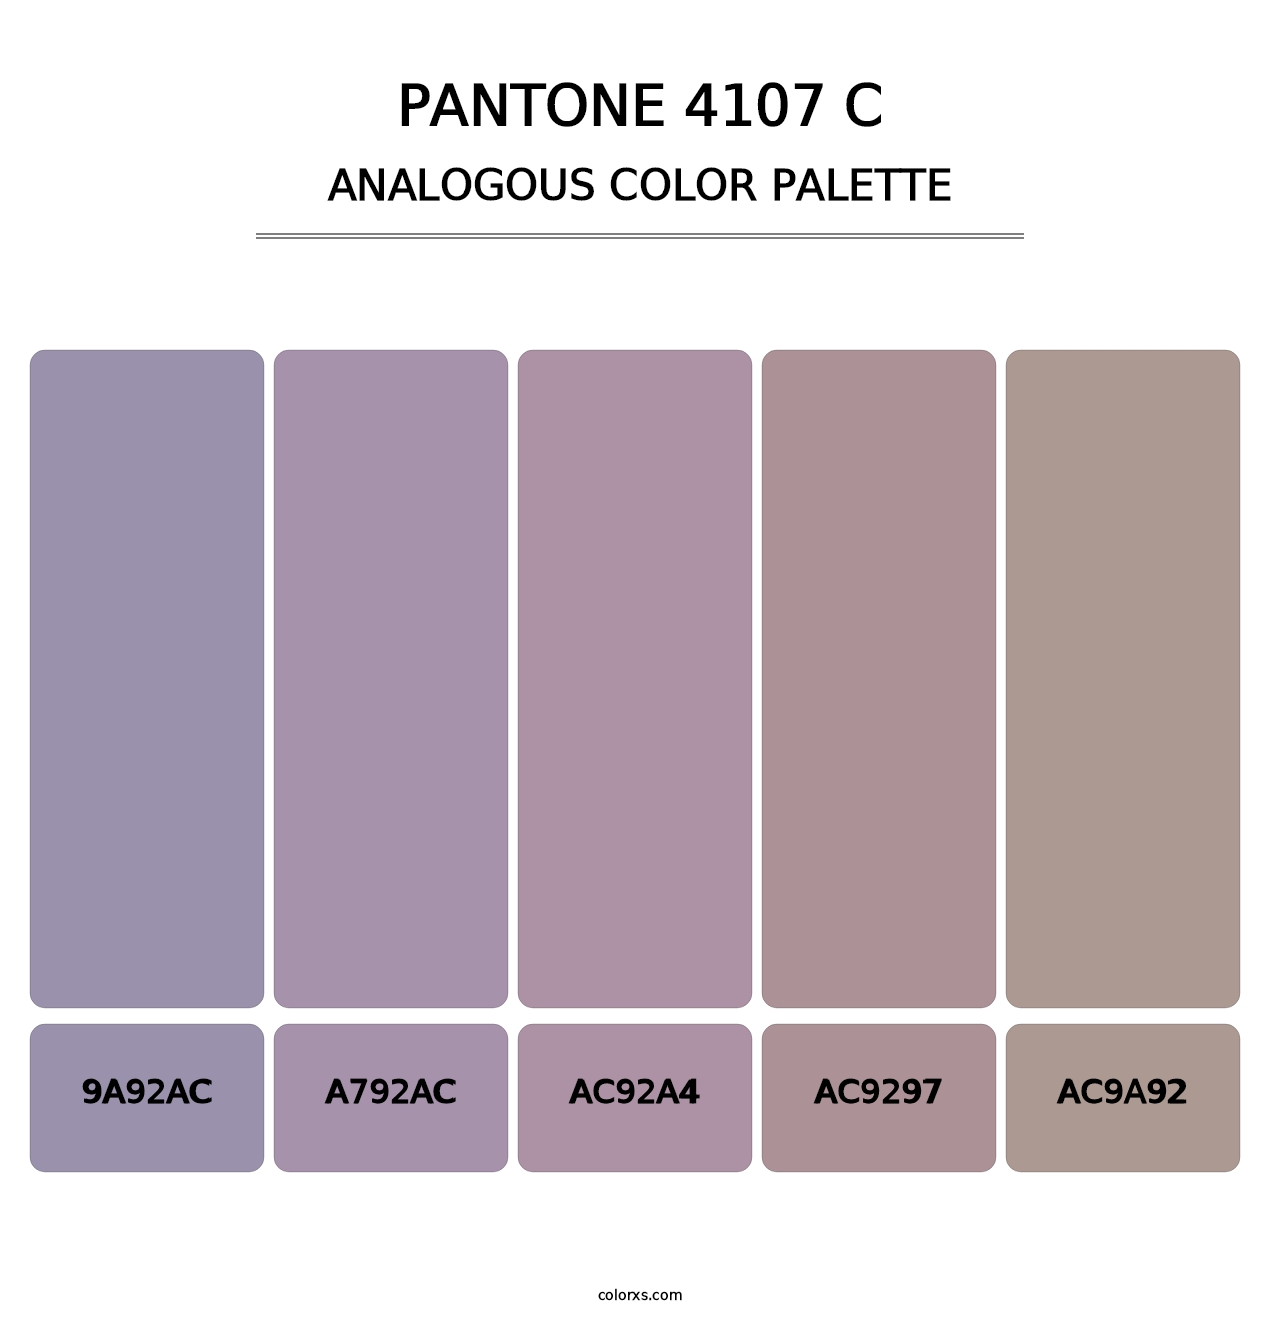 PANTONE 4107 C - Analogous Color Palette